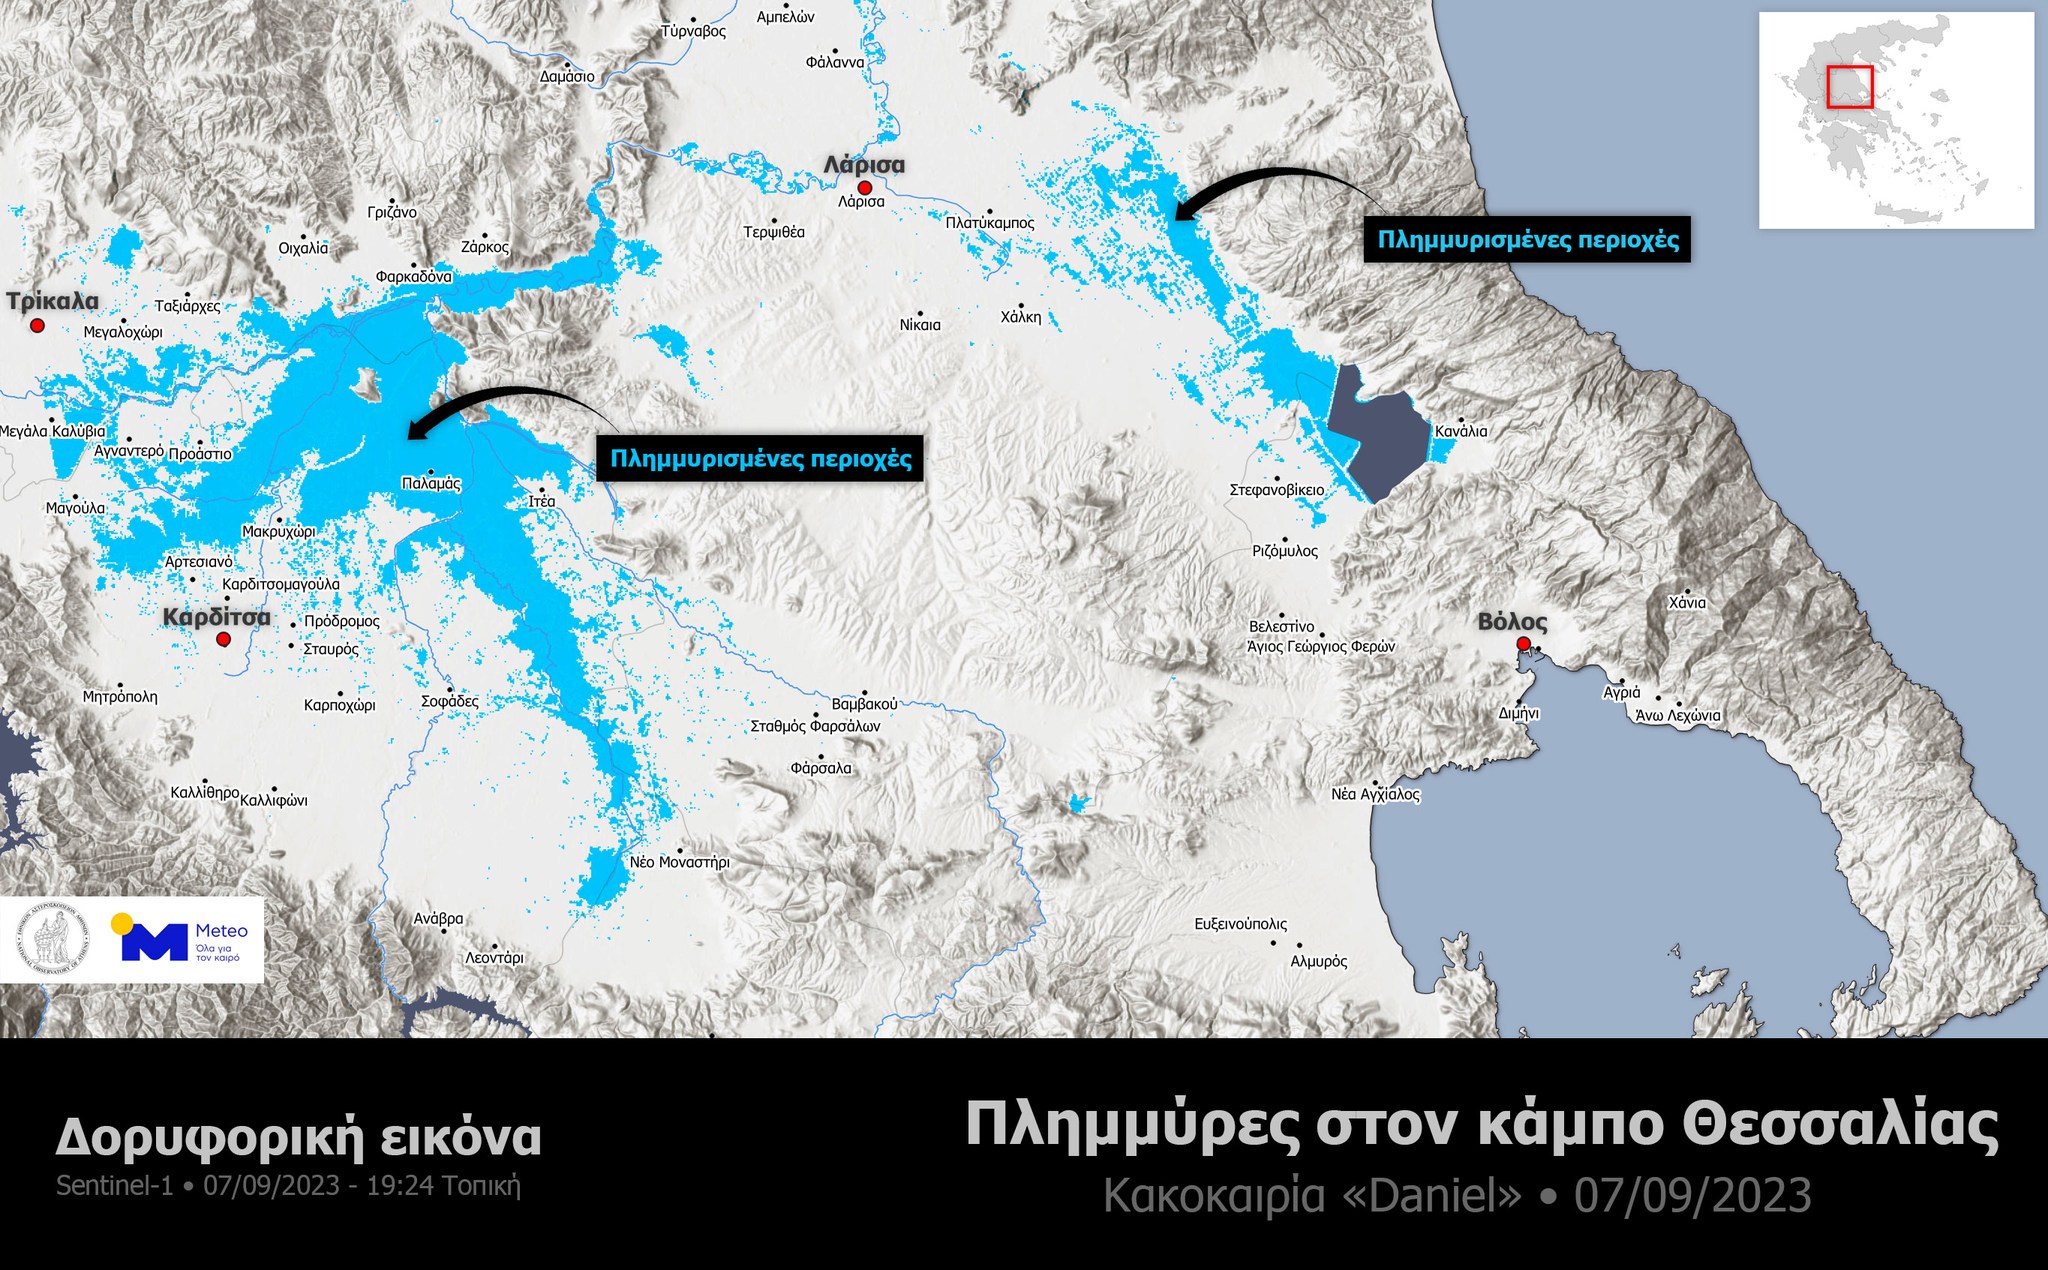 Κακοκαιρία Daniel: Άλλαξε ο χάρτης της Θεσσαλίας – Συναντήθηκαν πέντε ποτάμια – ΦΩΤΟ